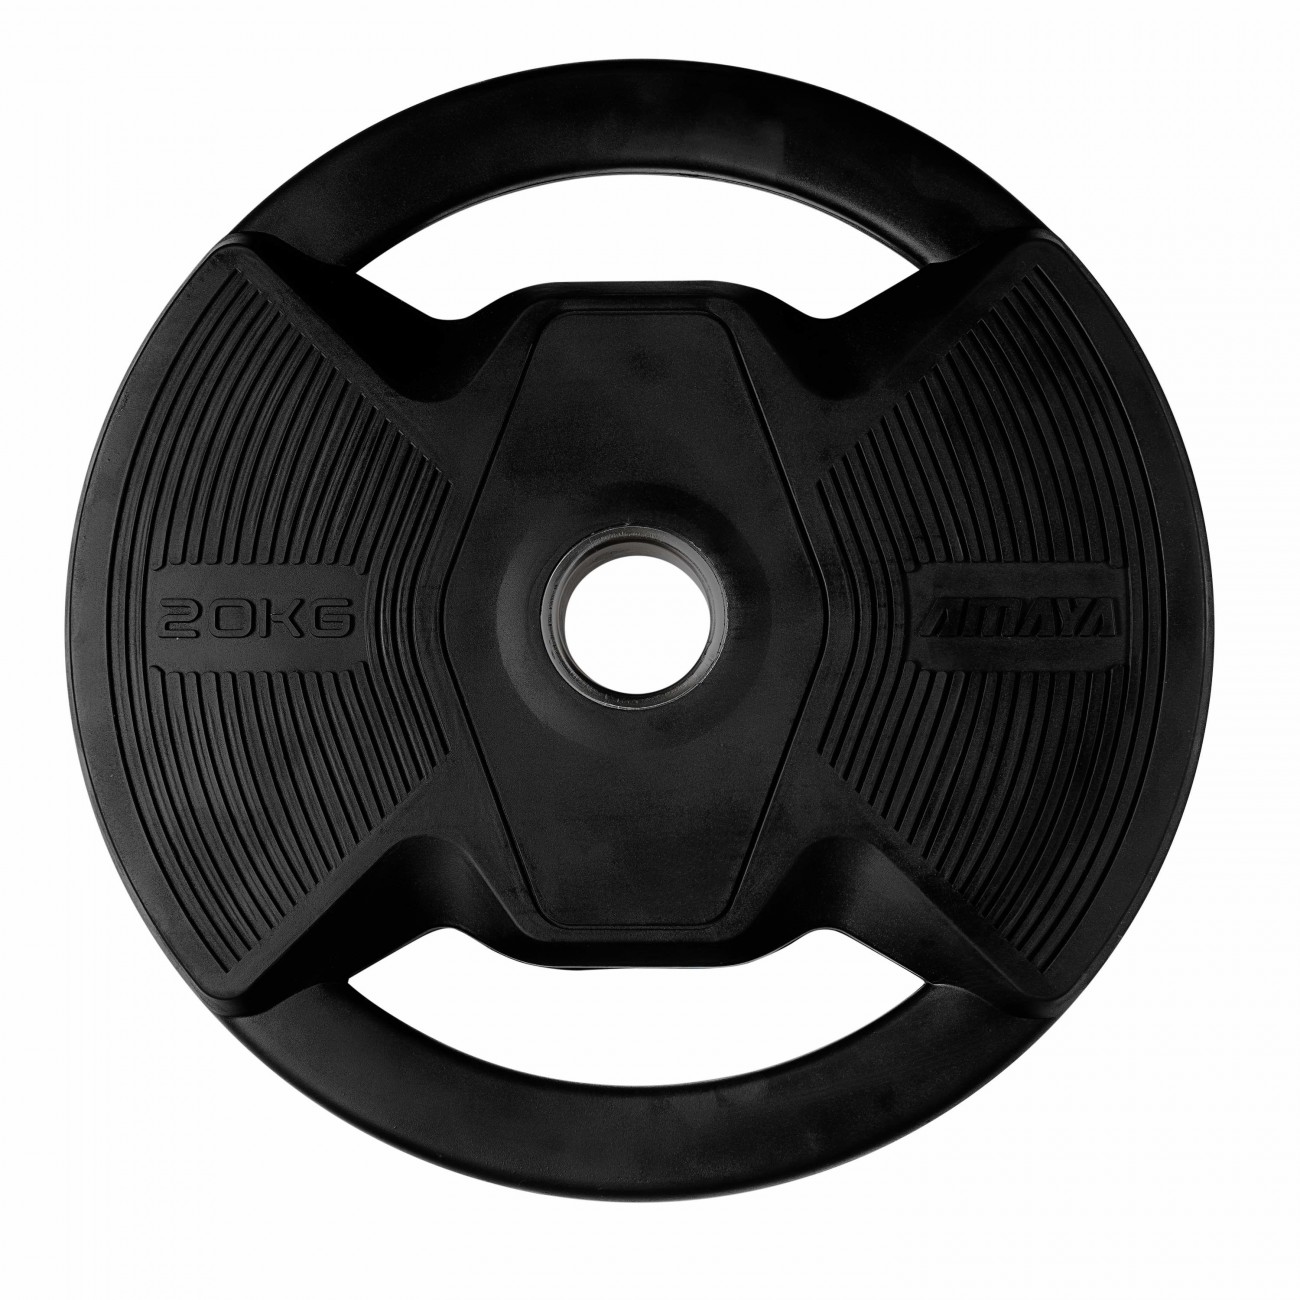 plato-olimpico-pro-con-agarres-black-rubber-negro (7)